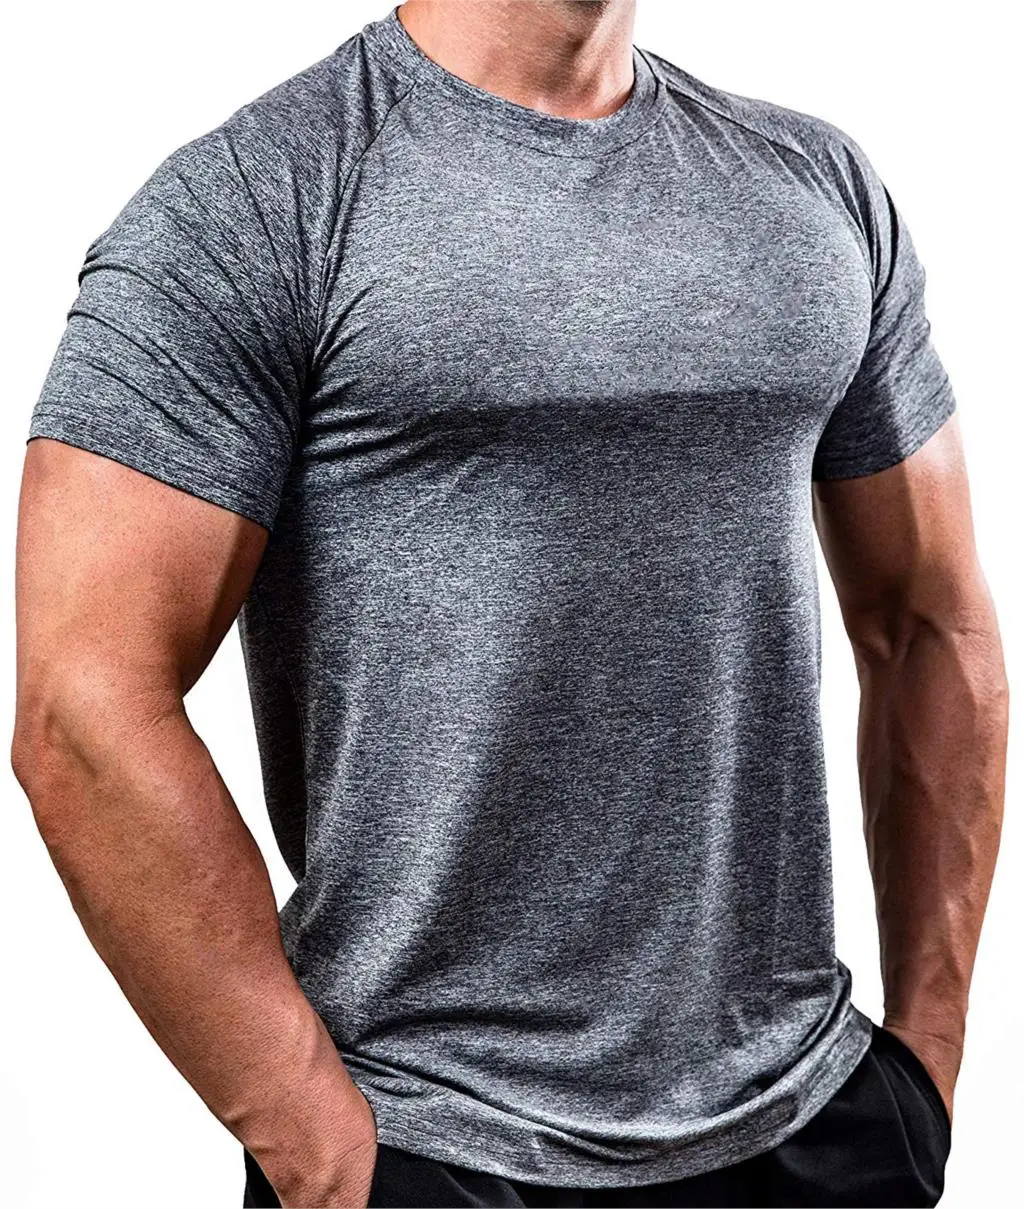 Мужские футболки для бега, быстросохнущие Компрессионные спортивные футболки, футболки для фитнеса и спортзала, мужские футболки для футбола, спортивная одежда - Цвет: Gray